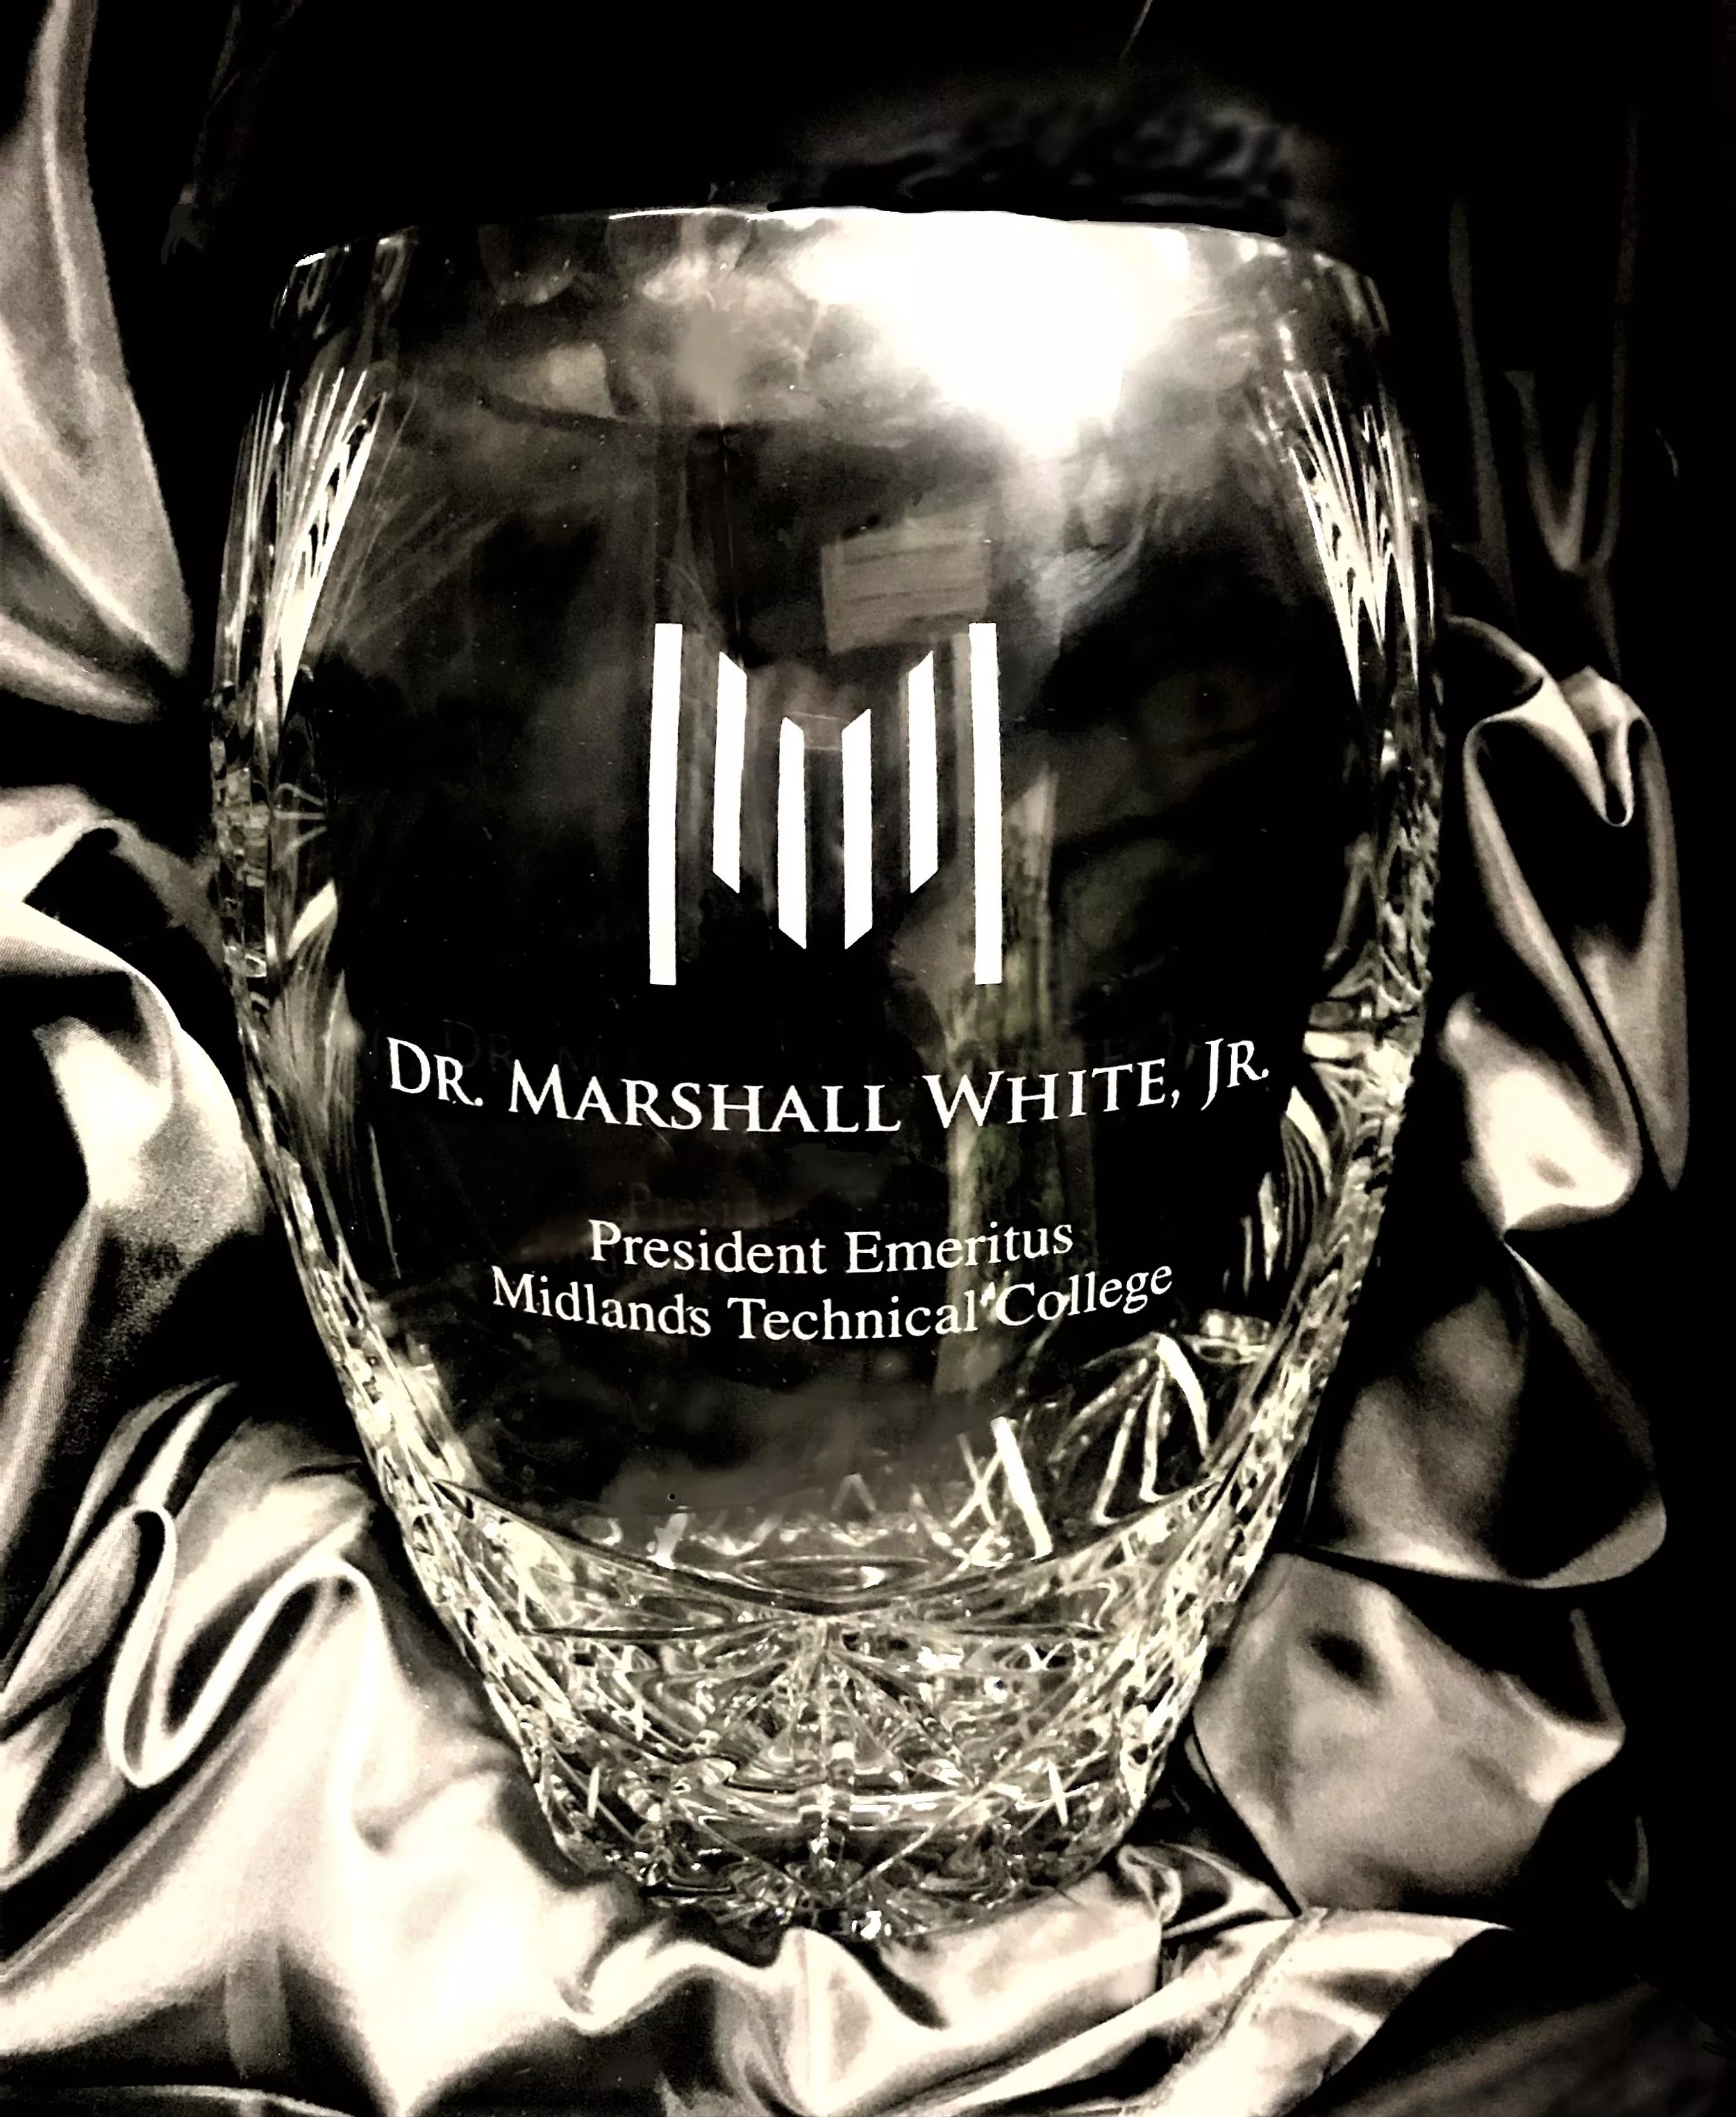 Vase honoring Dr. Marshall (Sonny) White, Jr.